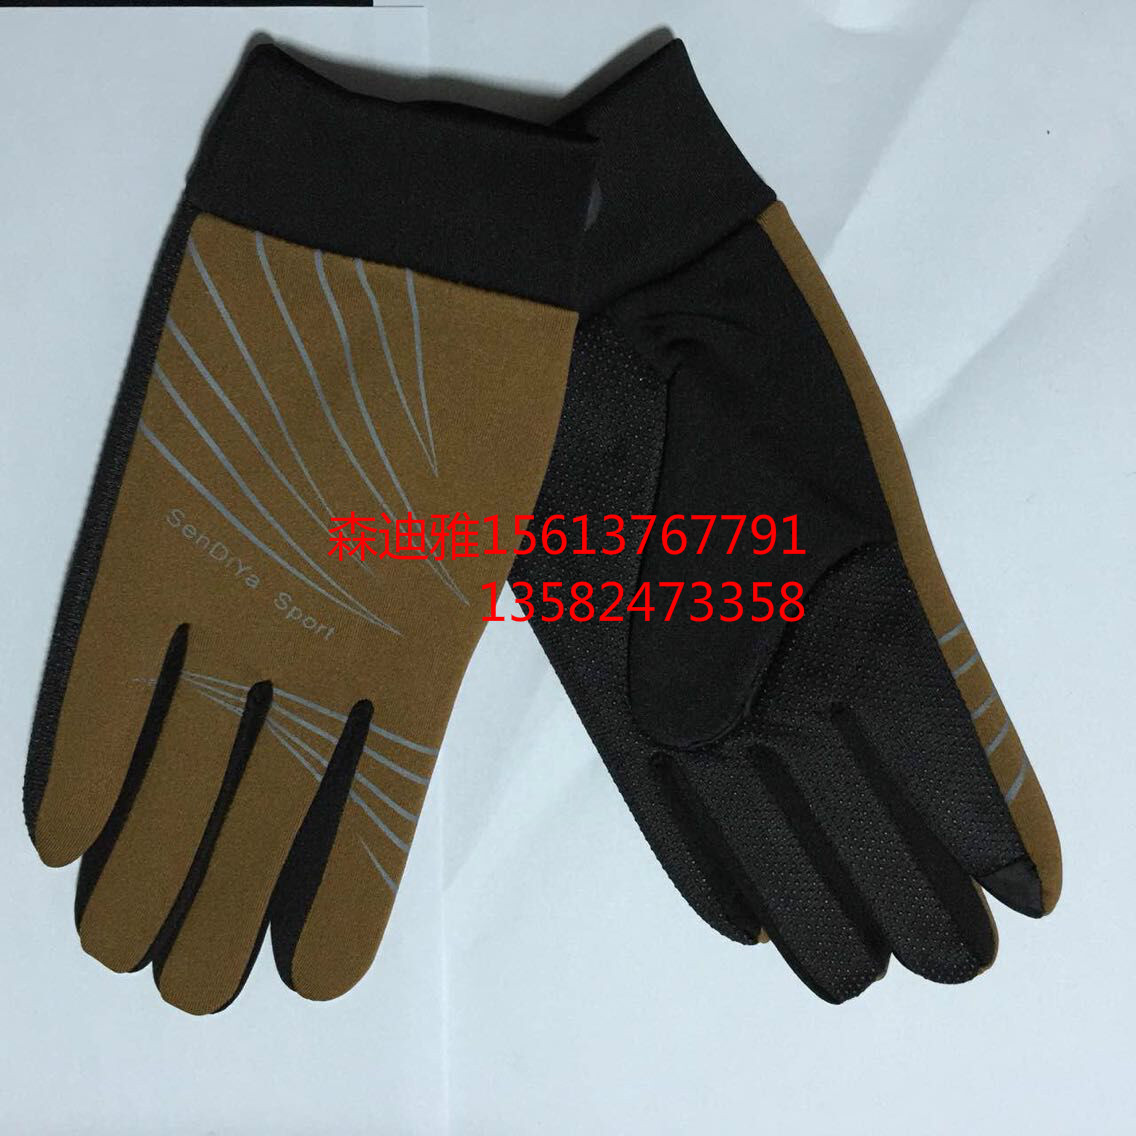 供应休闲手套运动手套触屏手套手套定制 森迪雅手套的生产流程。